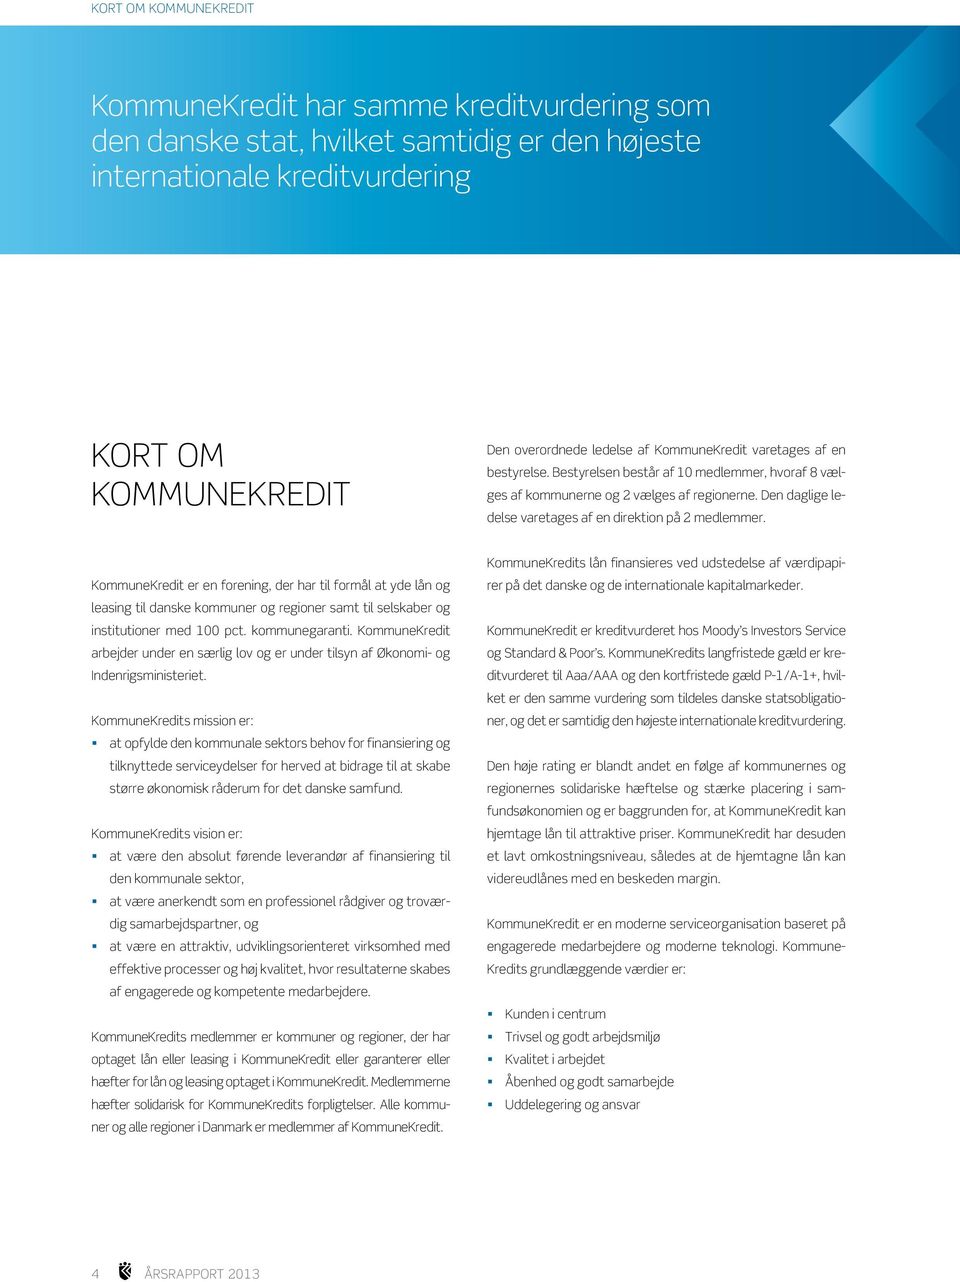 KommuneKredit er en forening, der har til formål at yde lån og leasing til danske kommuner og regioner samt til selskaber og institutioner med 100 pct. kommunegaranti.